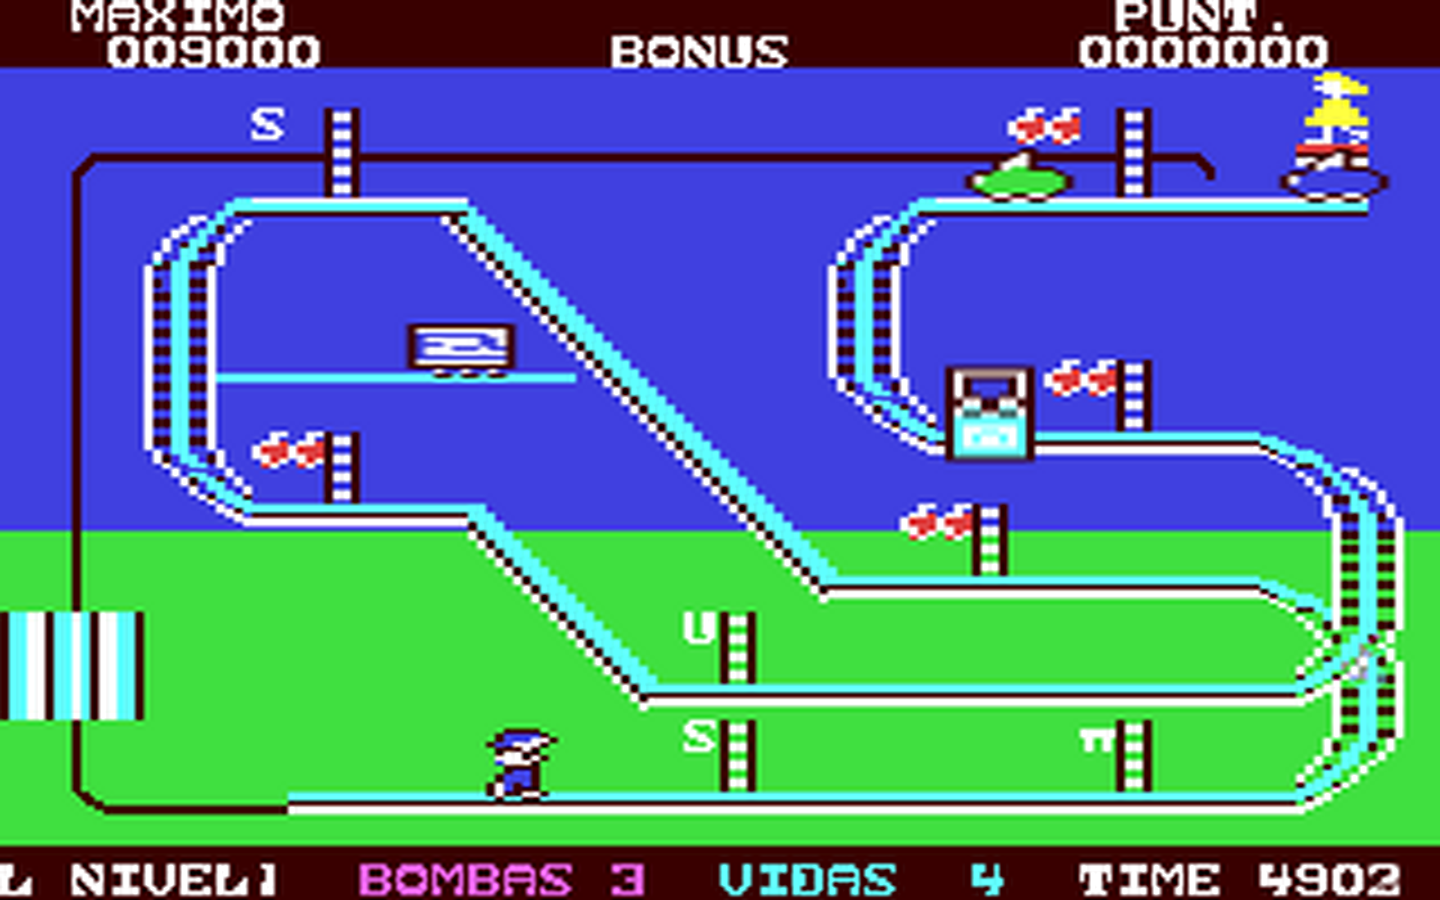 C64 GameBase Feria,_La Microjet/STARS_Commodore 1985